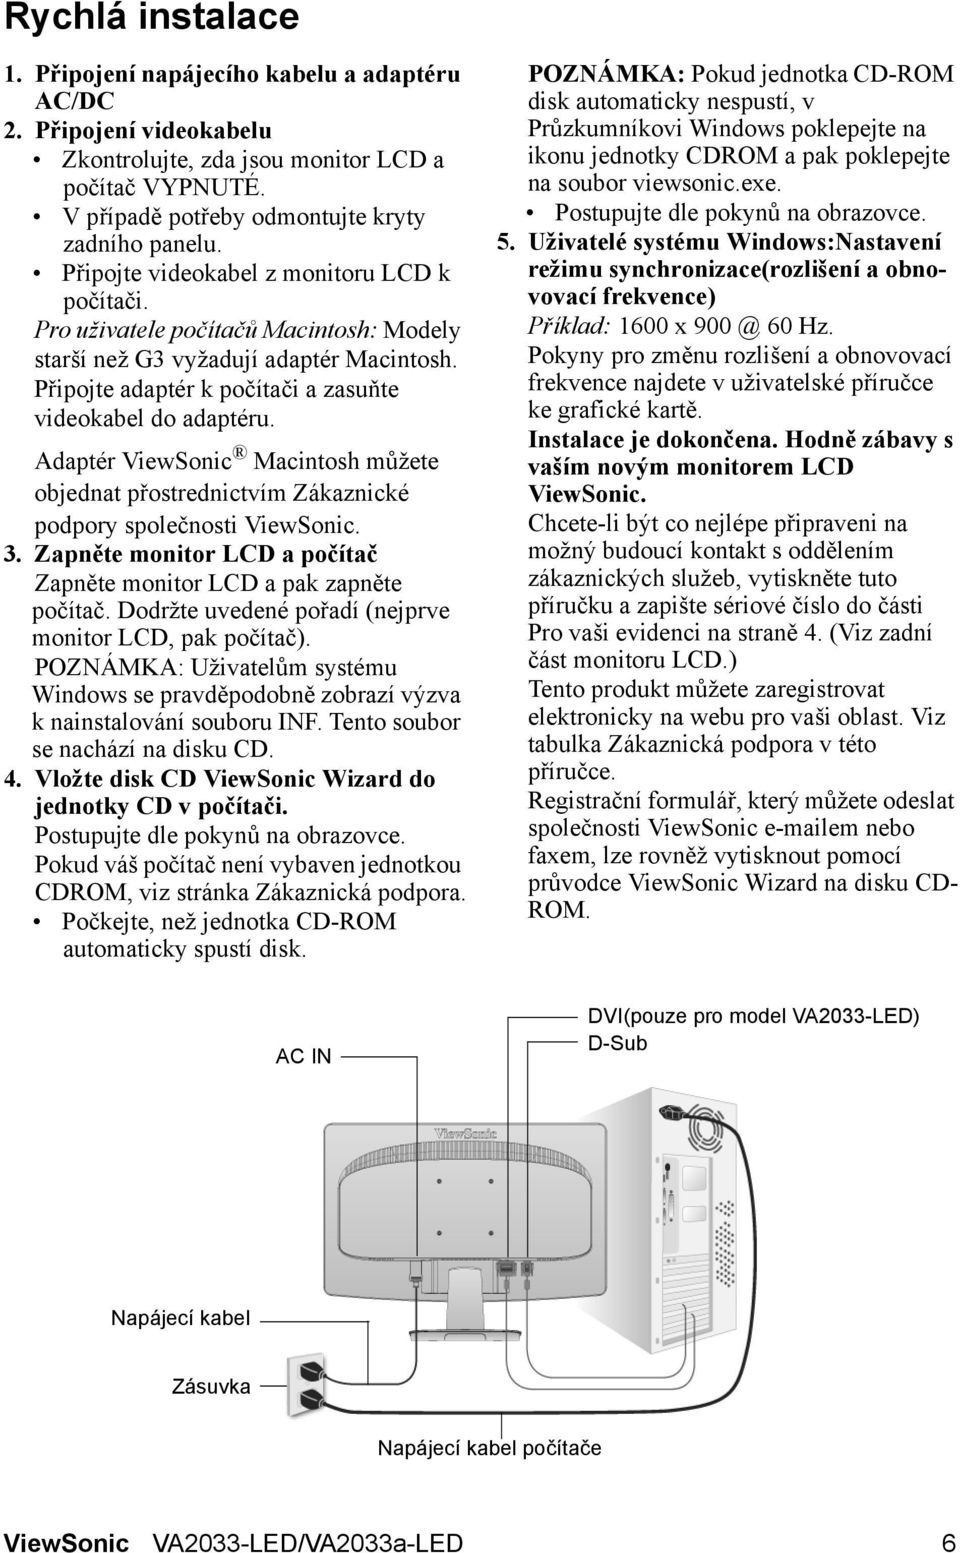 Adaptér ViewSonic Macintosh můžete objednat přostrednictvím Zákaznické podpory společnosti ViewSonic. 3. Zapněte monitor LCD a počítač Zapněte monitor LCD a pak zapněte počítač.